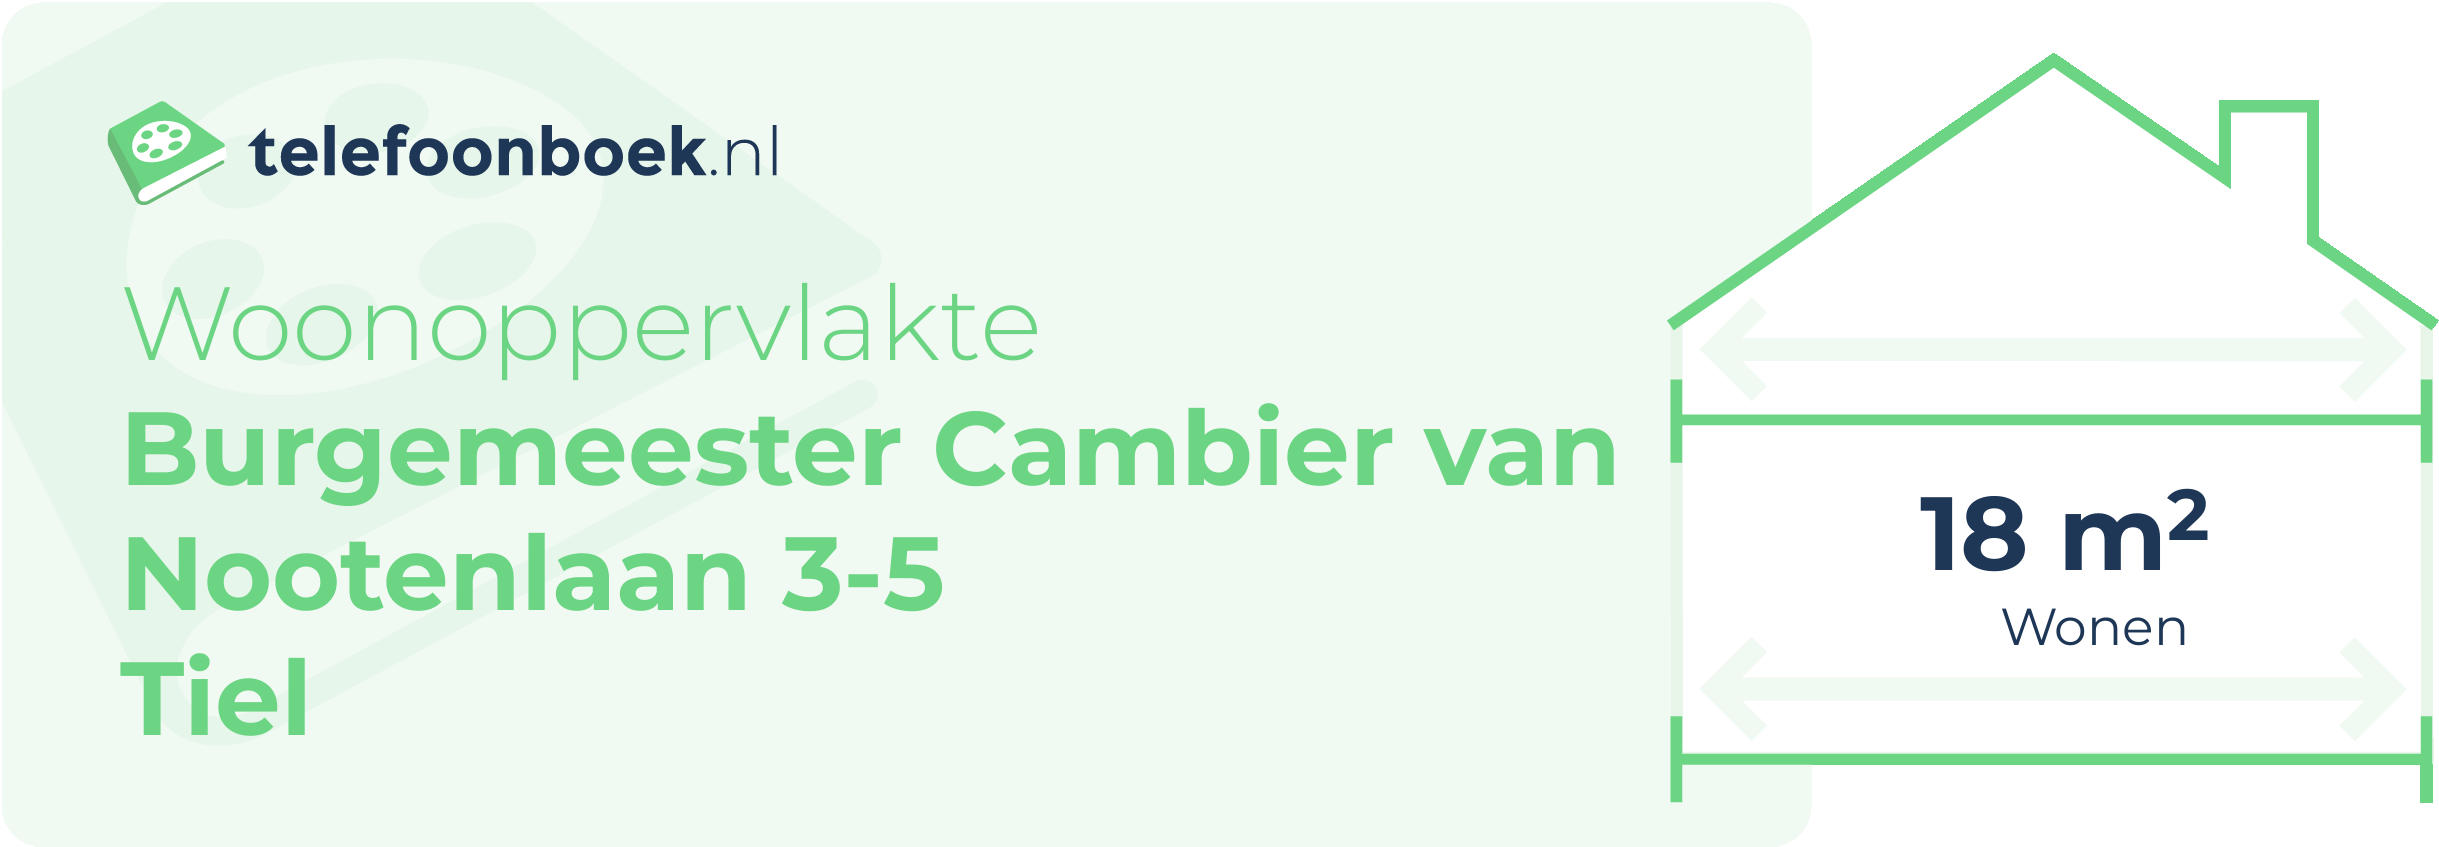 Woonoppervlakte Burgemeester Cambier Van Nootenlaan 3-5 Tiel